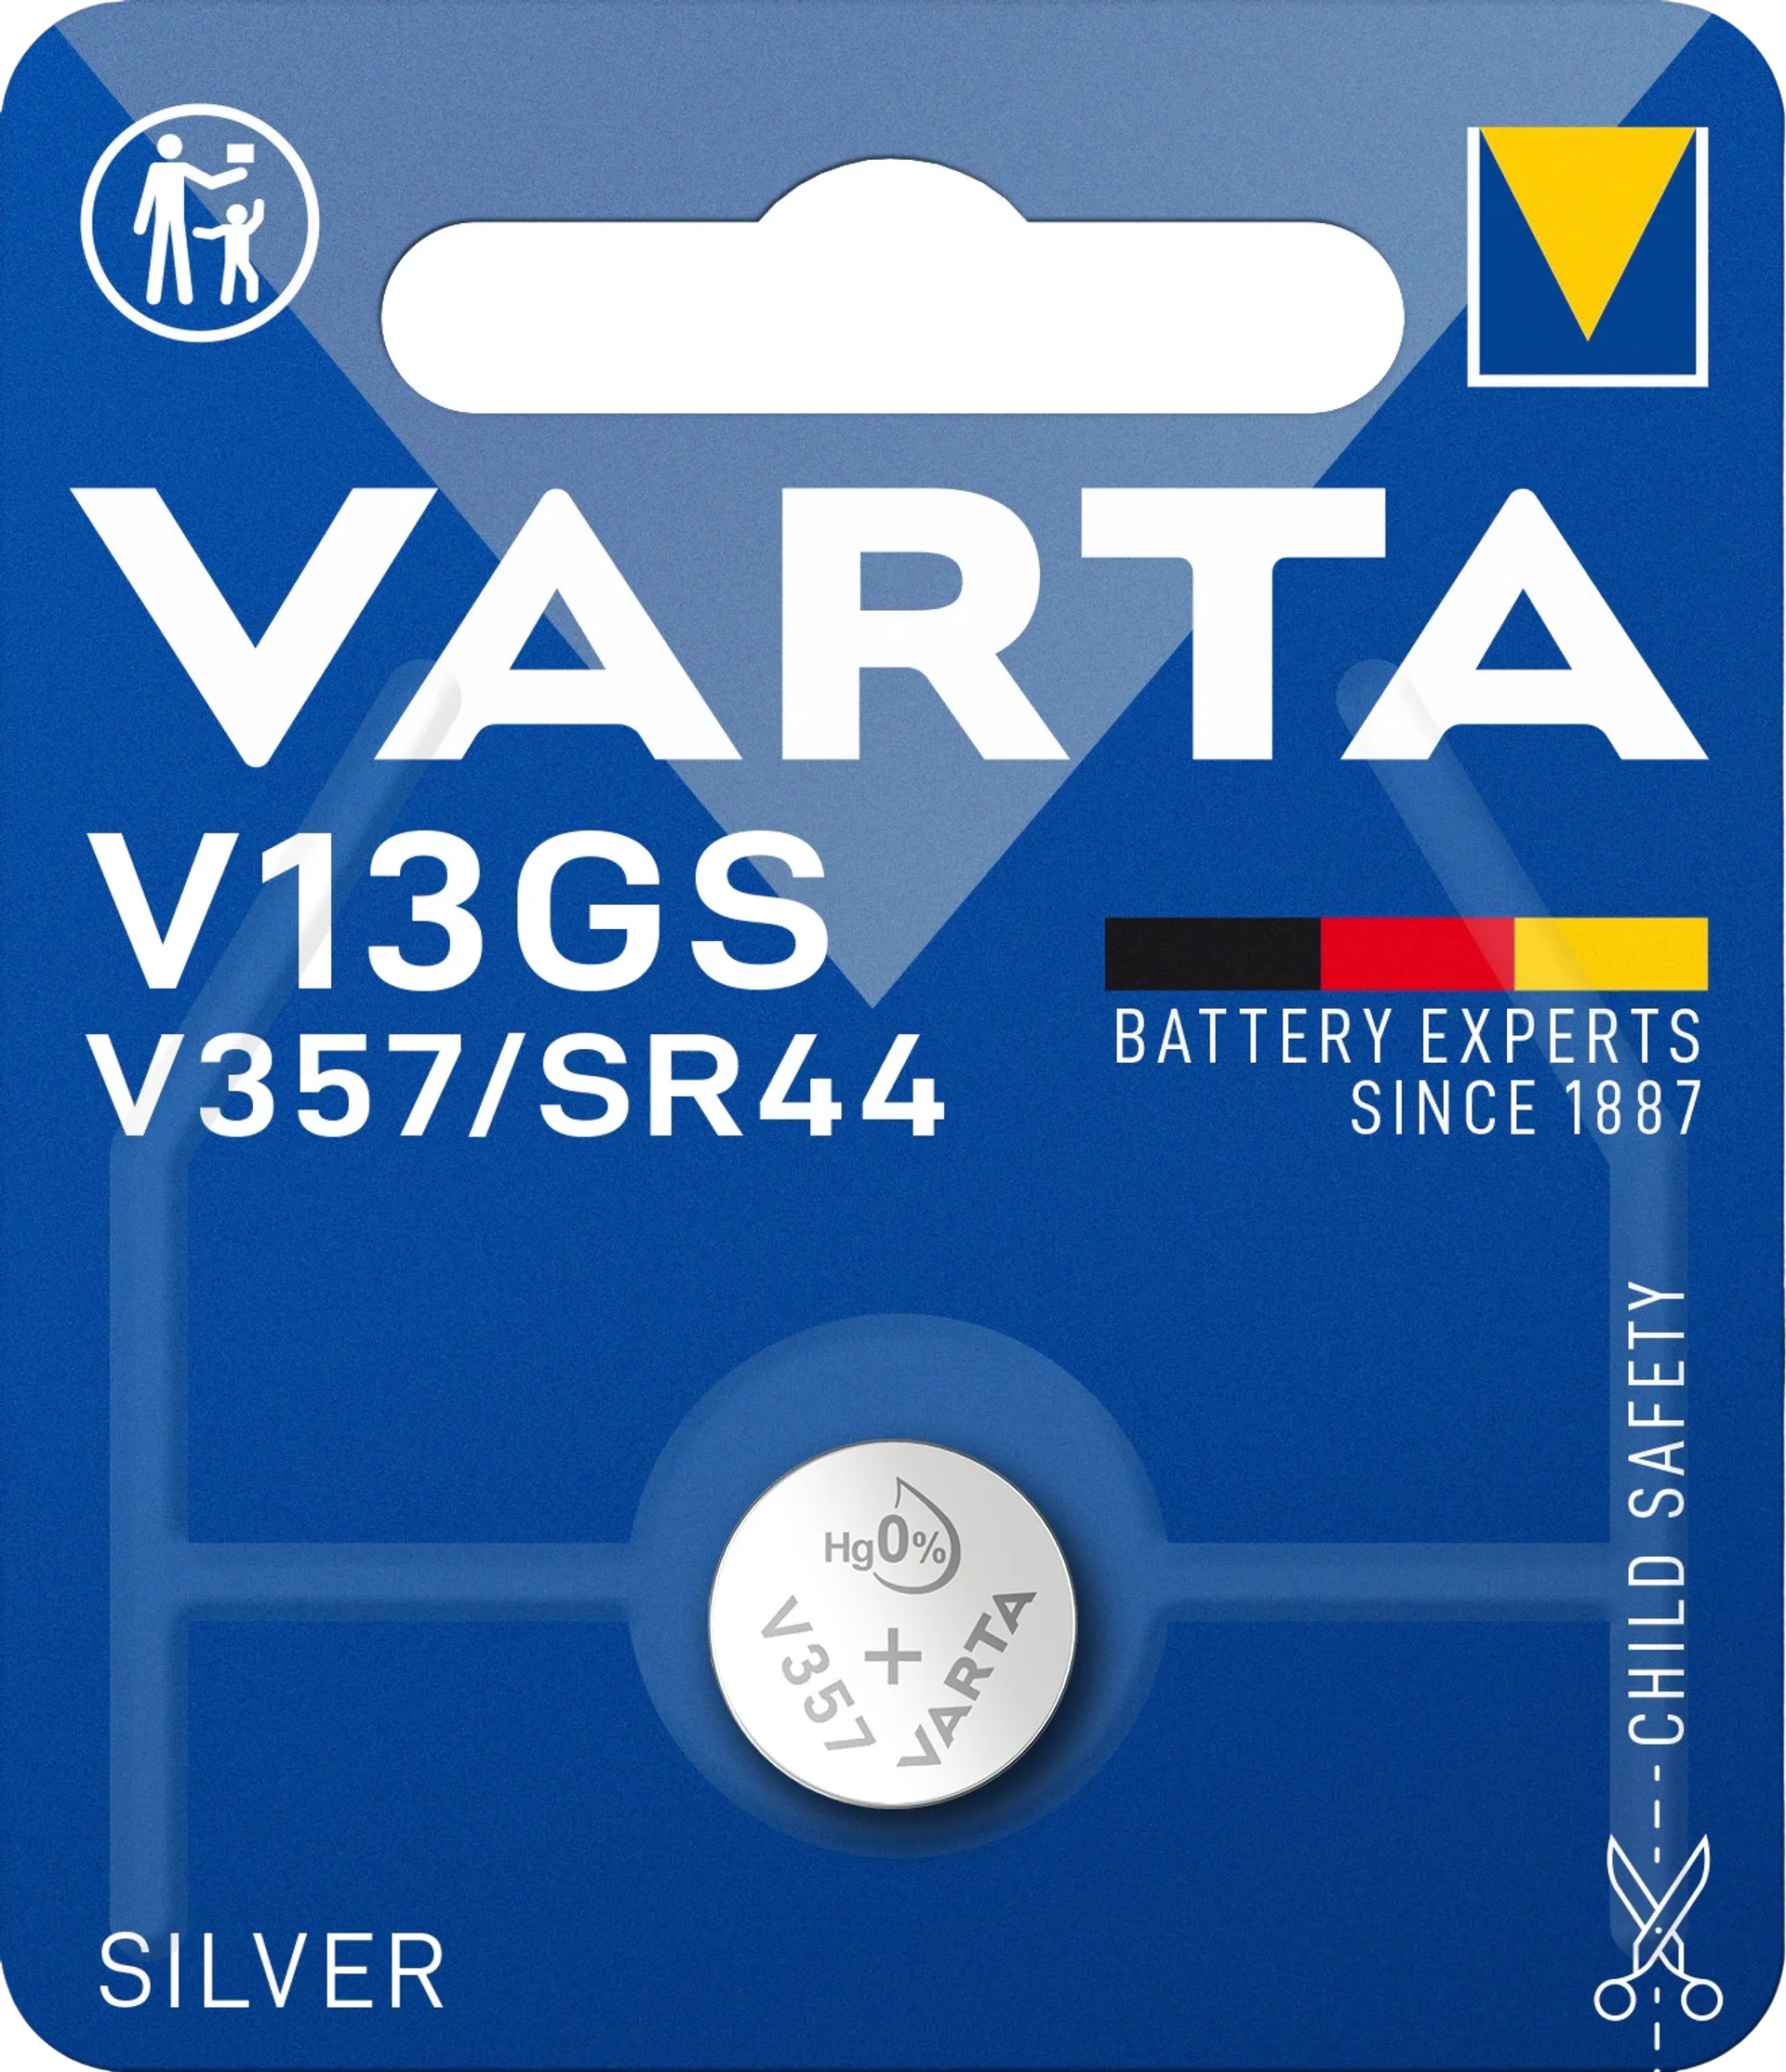 VARTA SILVER Coin V13GS/V357/SR44 1kpl - 1